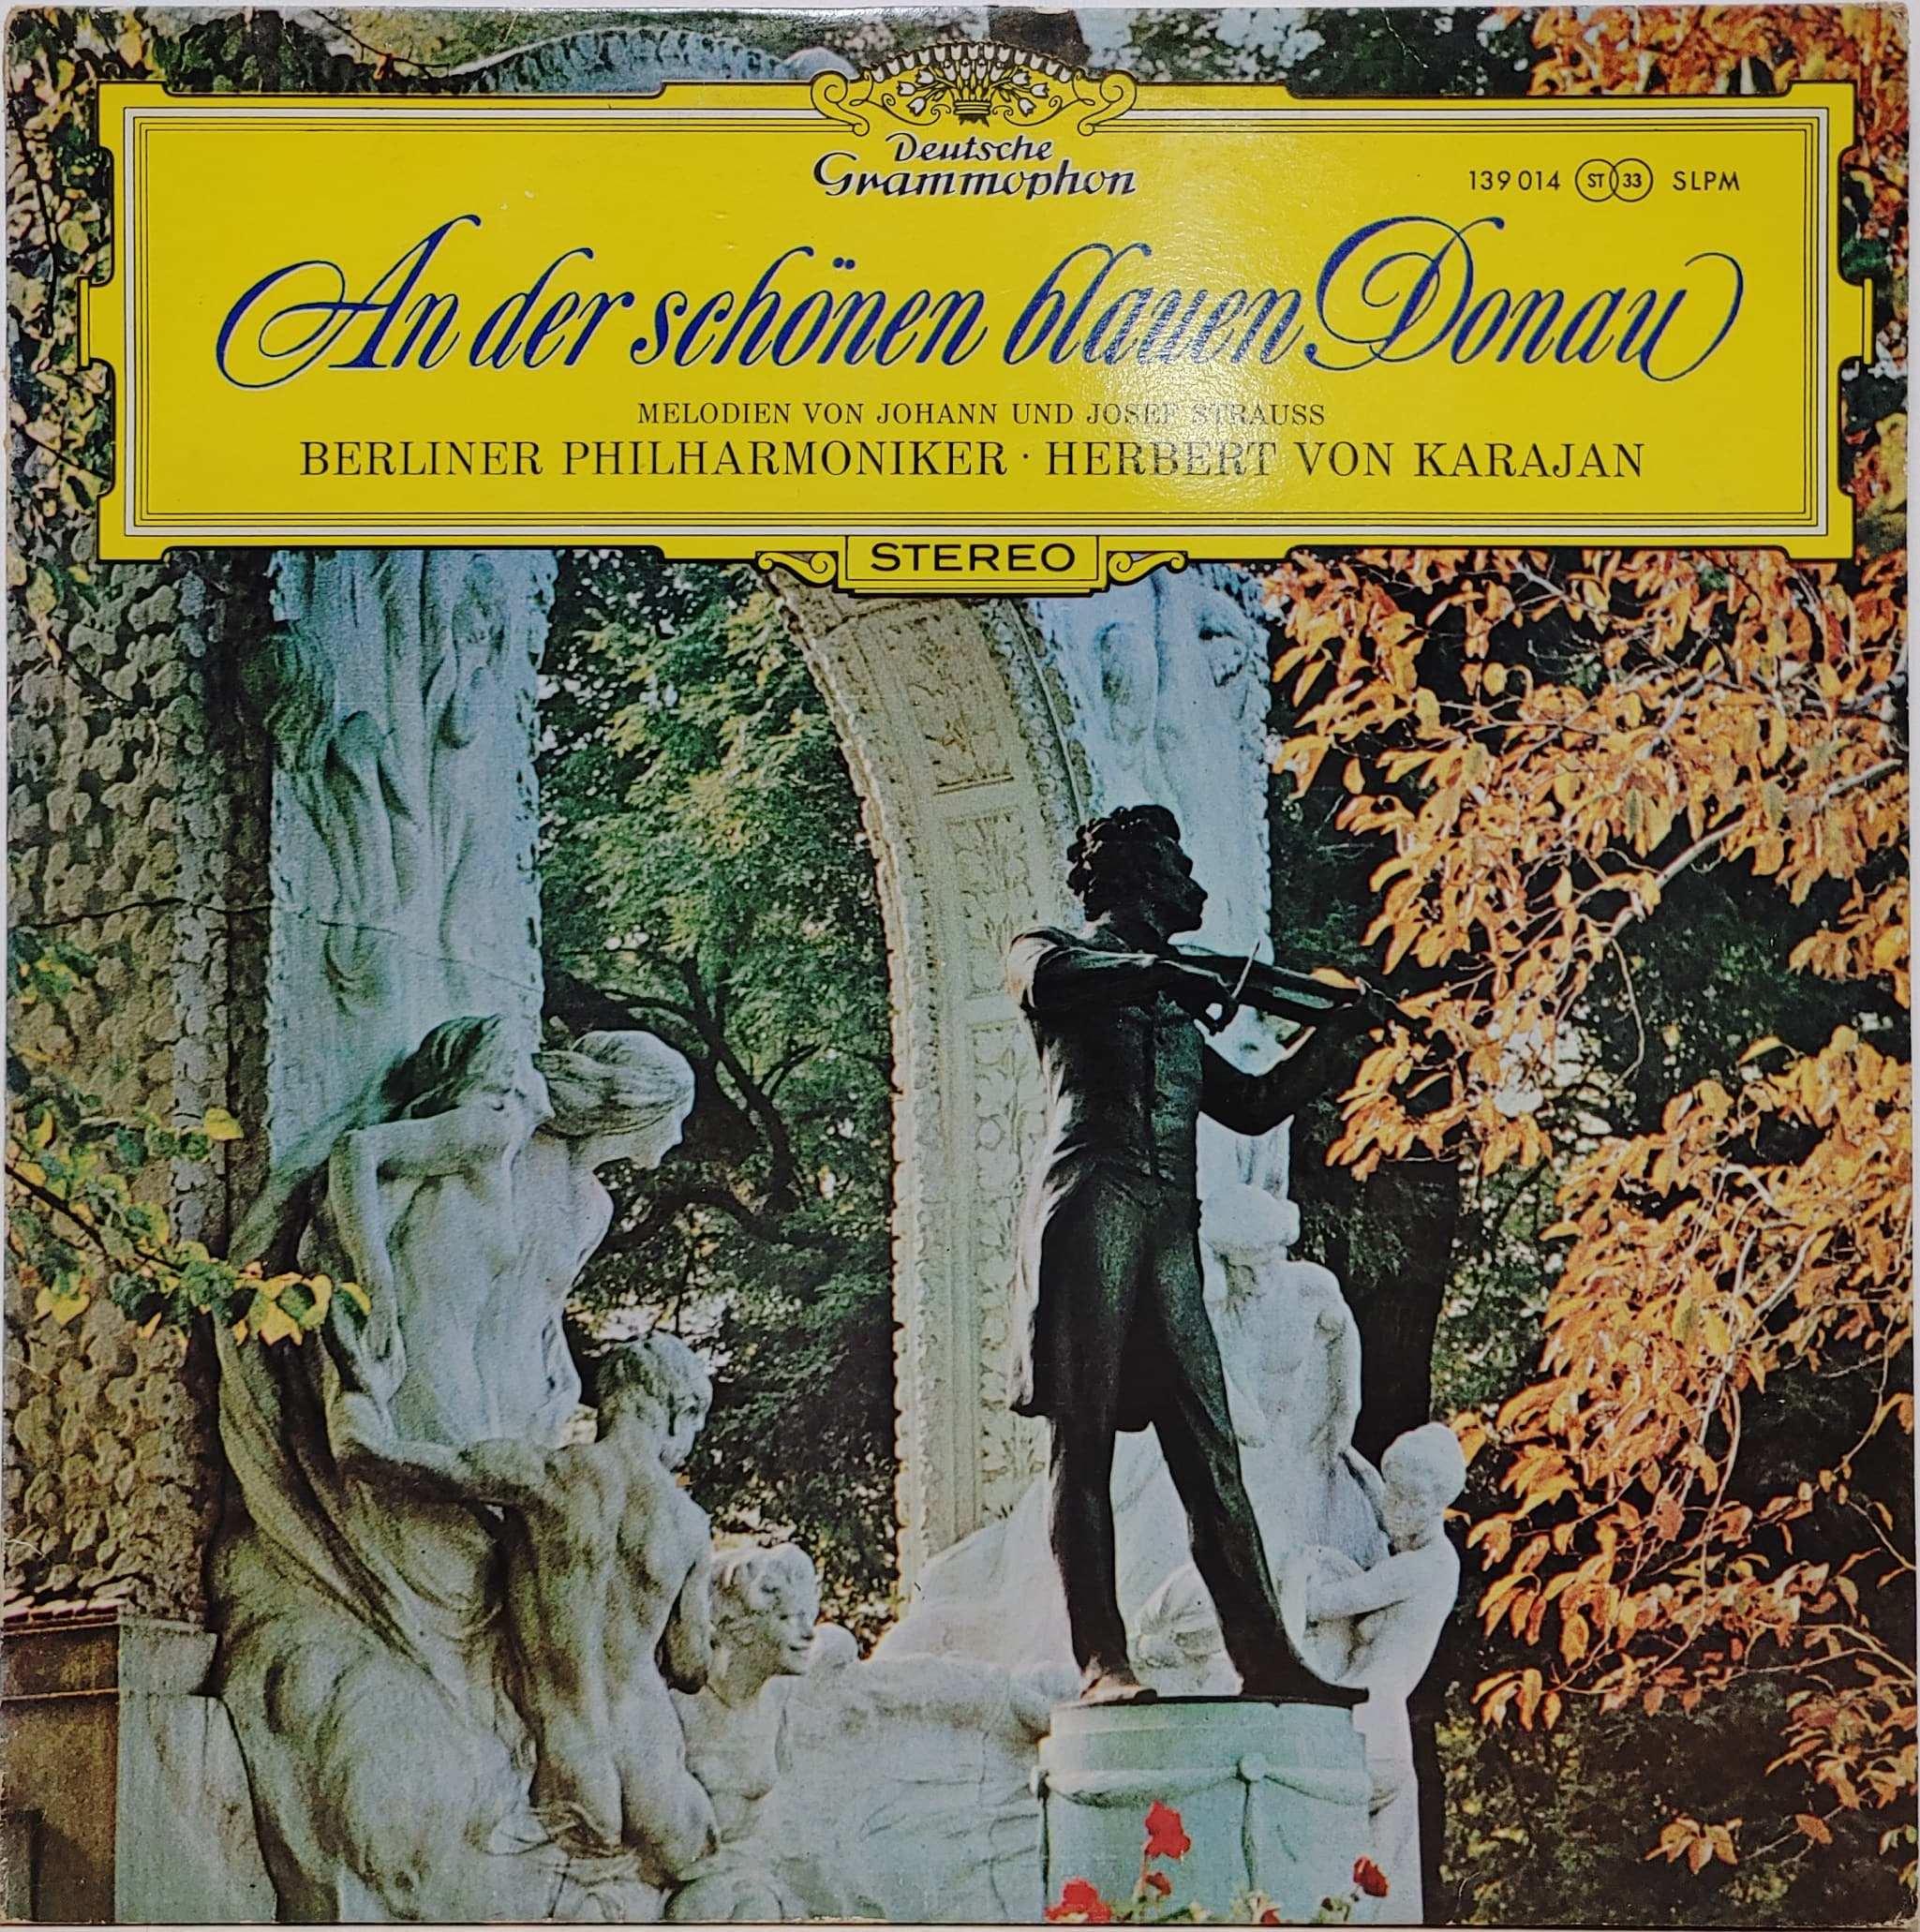 Strauss / An Der Schonen Blauen Donau Herbert Von Karajan The Blue Danube